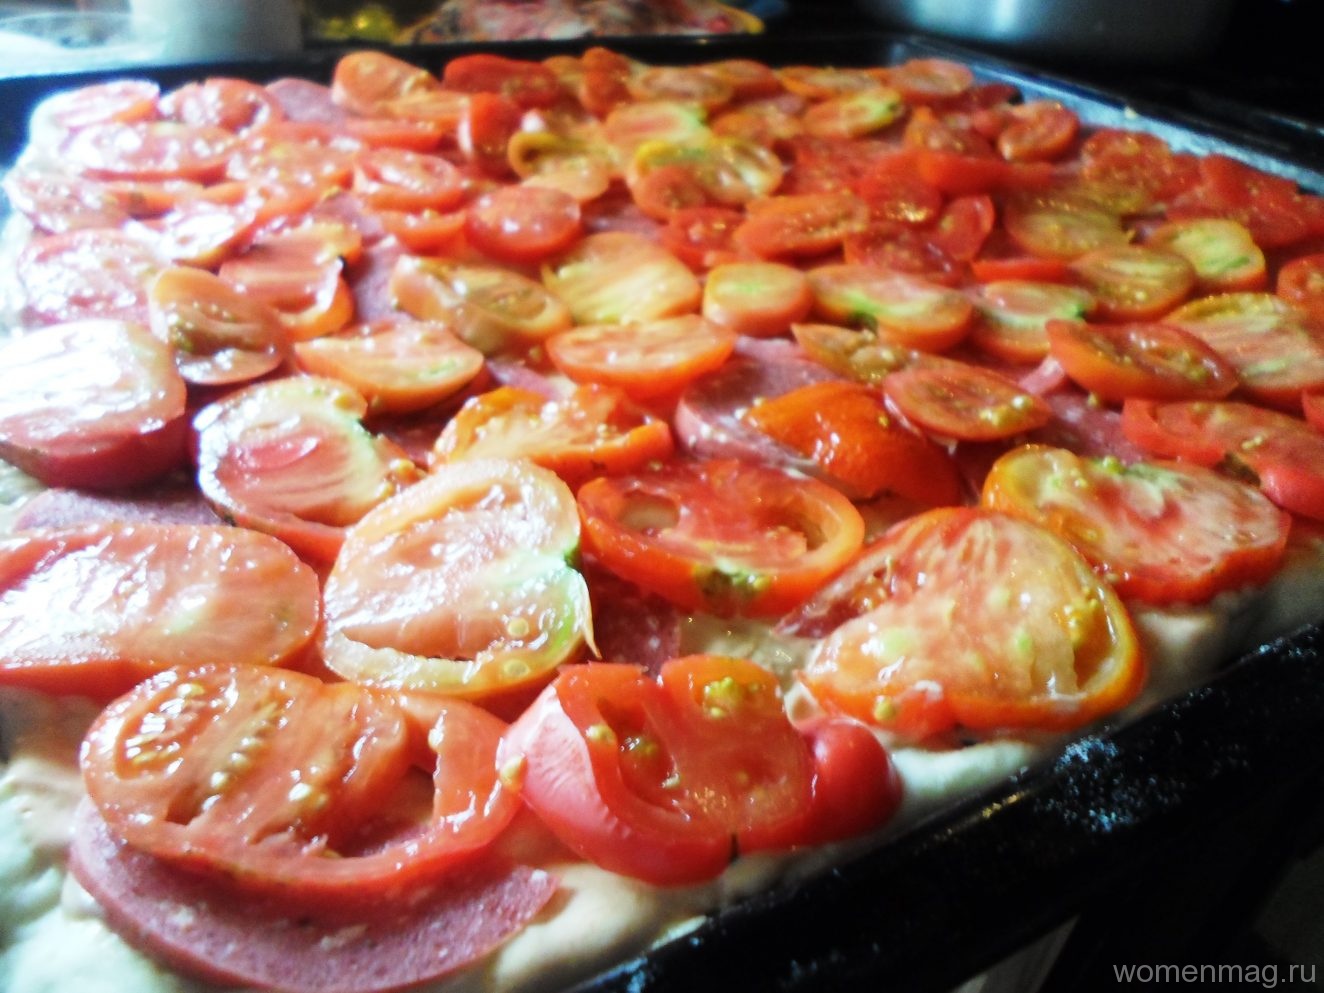 рецепт приготовления пиццы в домашних условиях в духовке с пошаговым фото с колбасой и помидорами фото 49